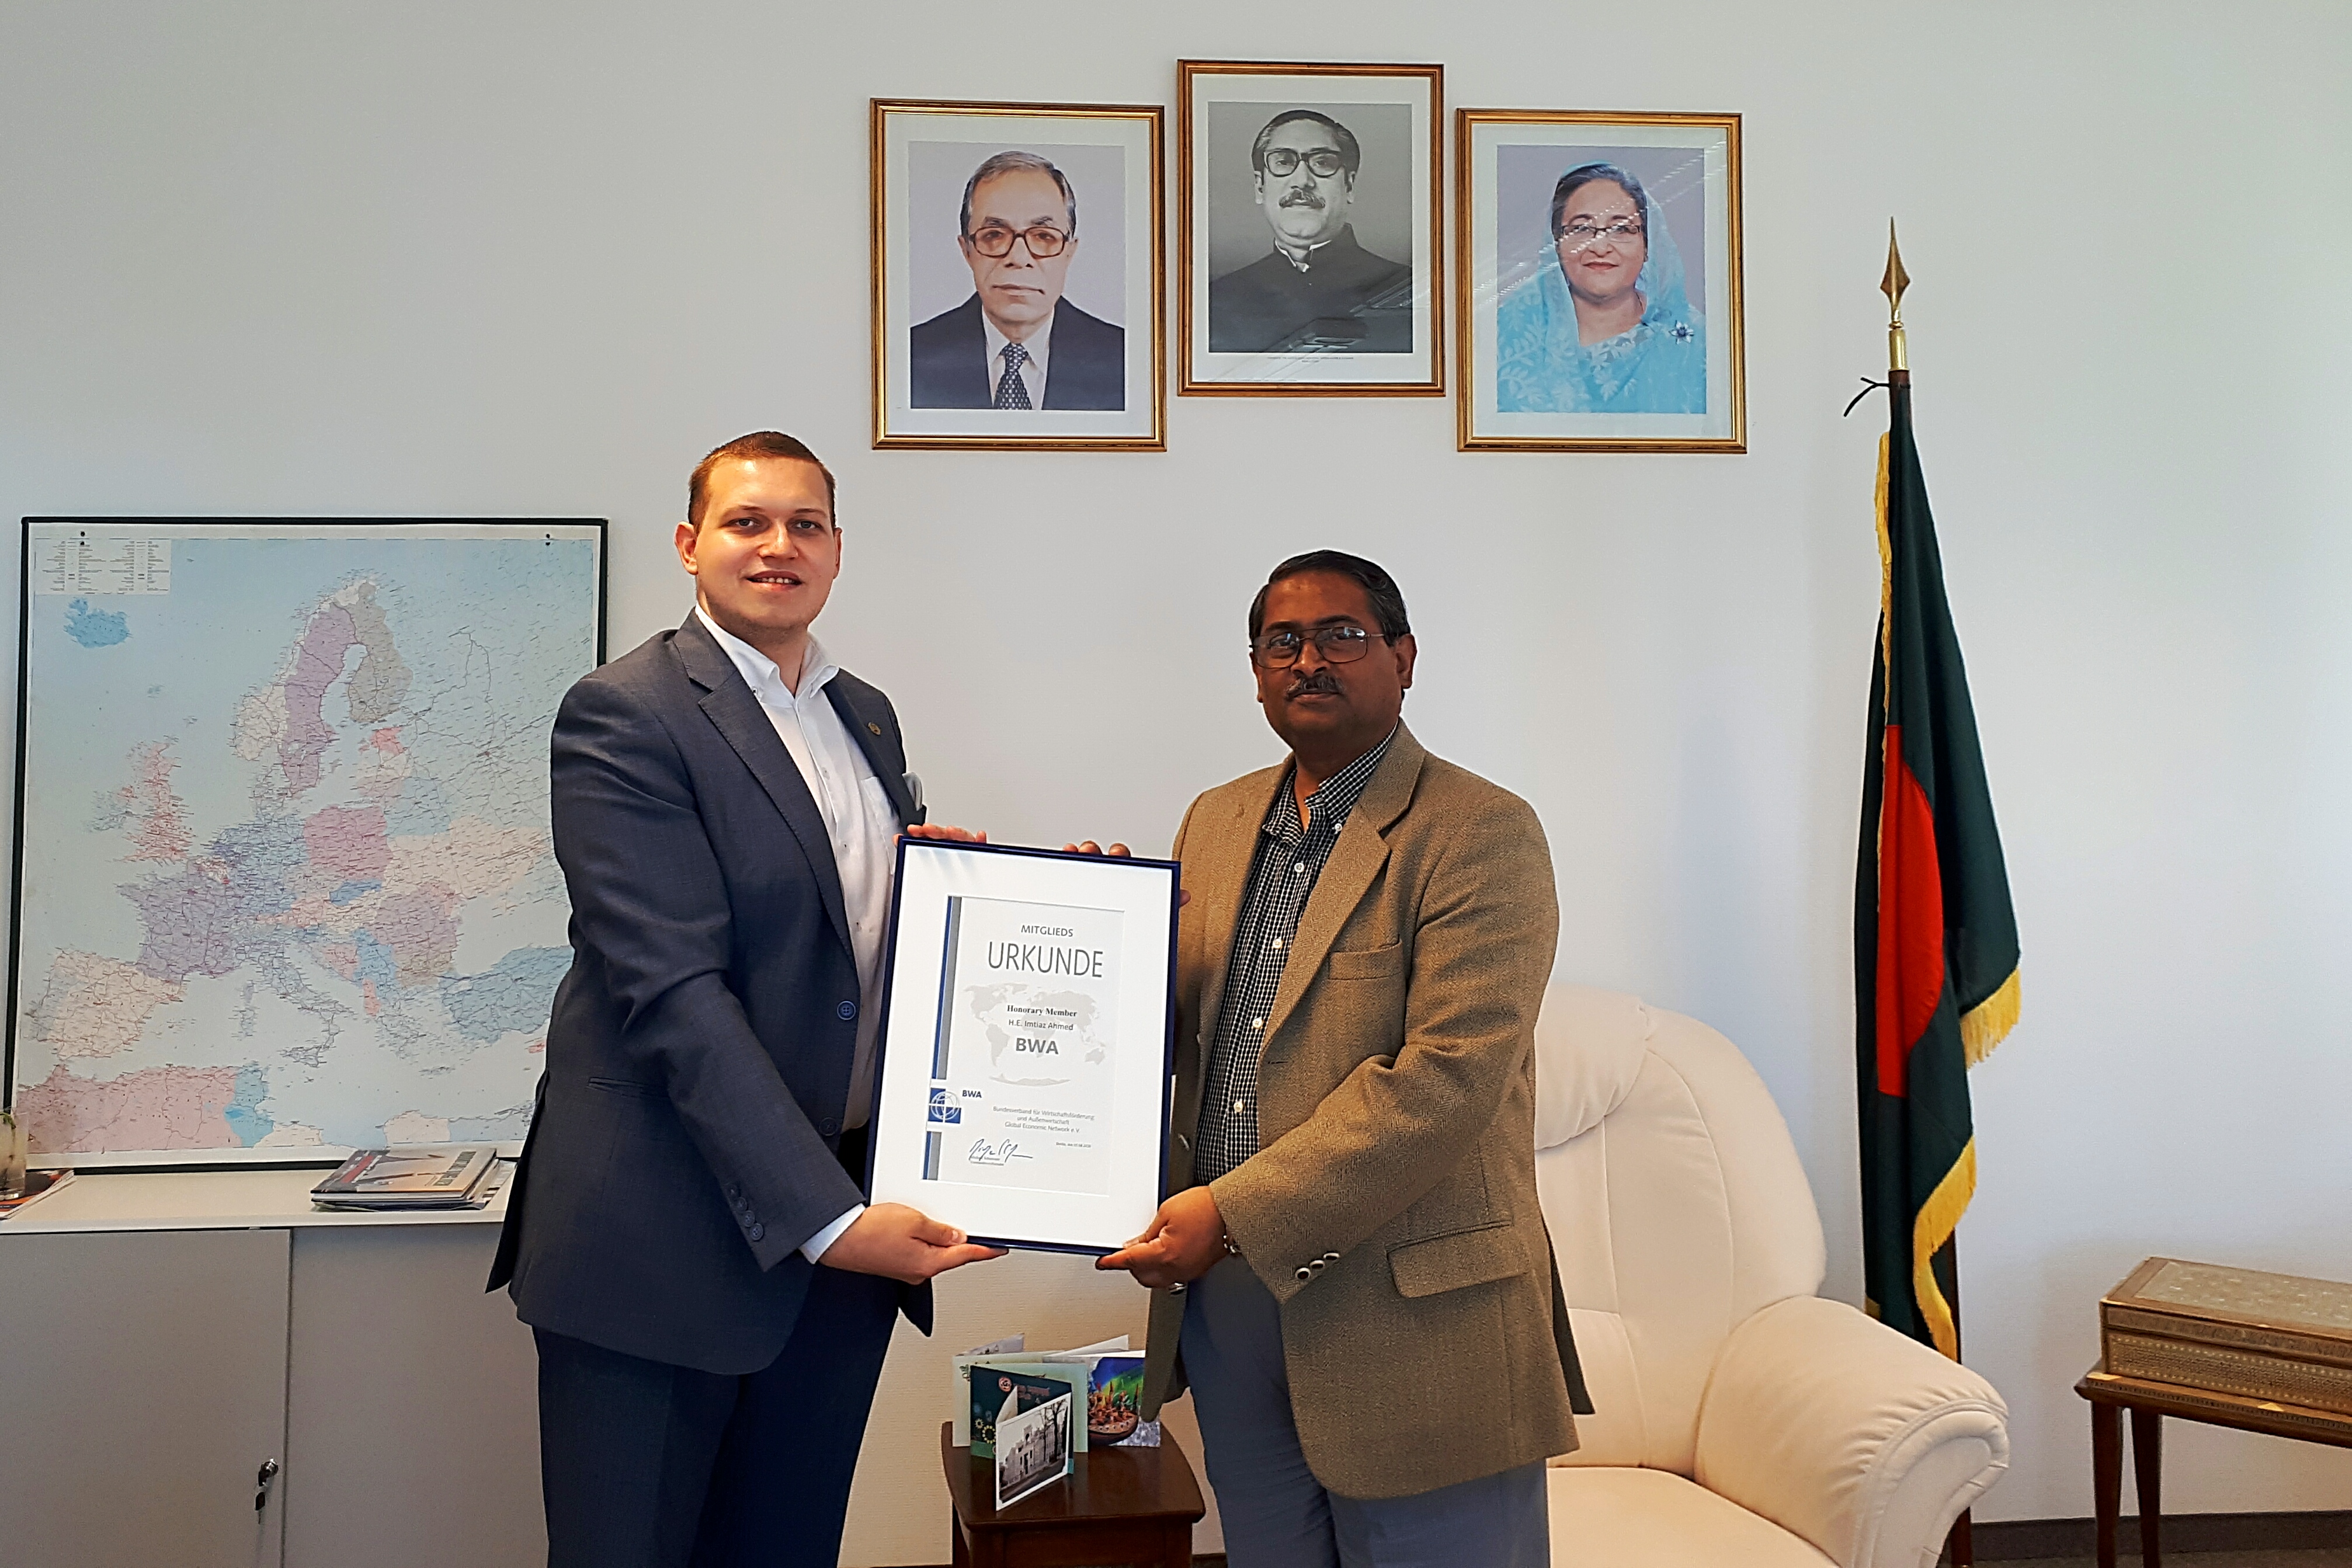 Foto: S.E. Imtiaz Ahmed erhält die Urkunde als Ehrenmitglied der Internationalen Senatskammer von BWA-Diplomatieberater Urs Unkauf.